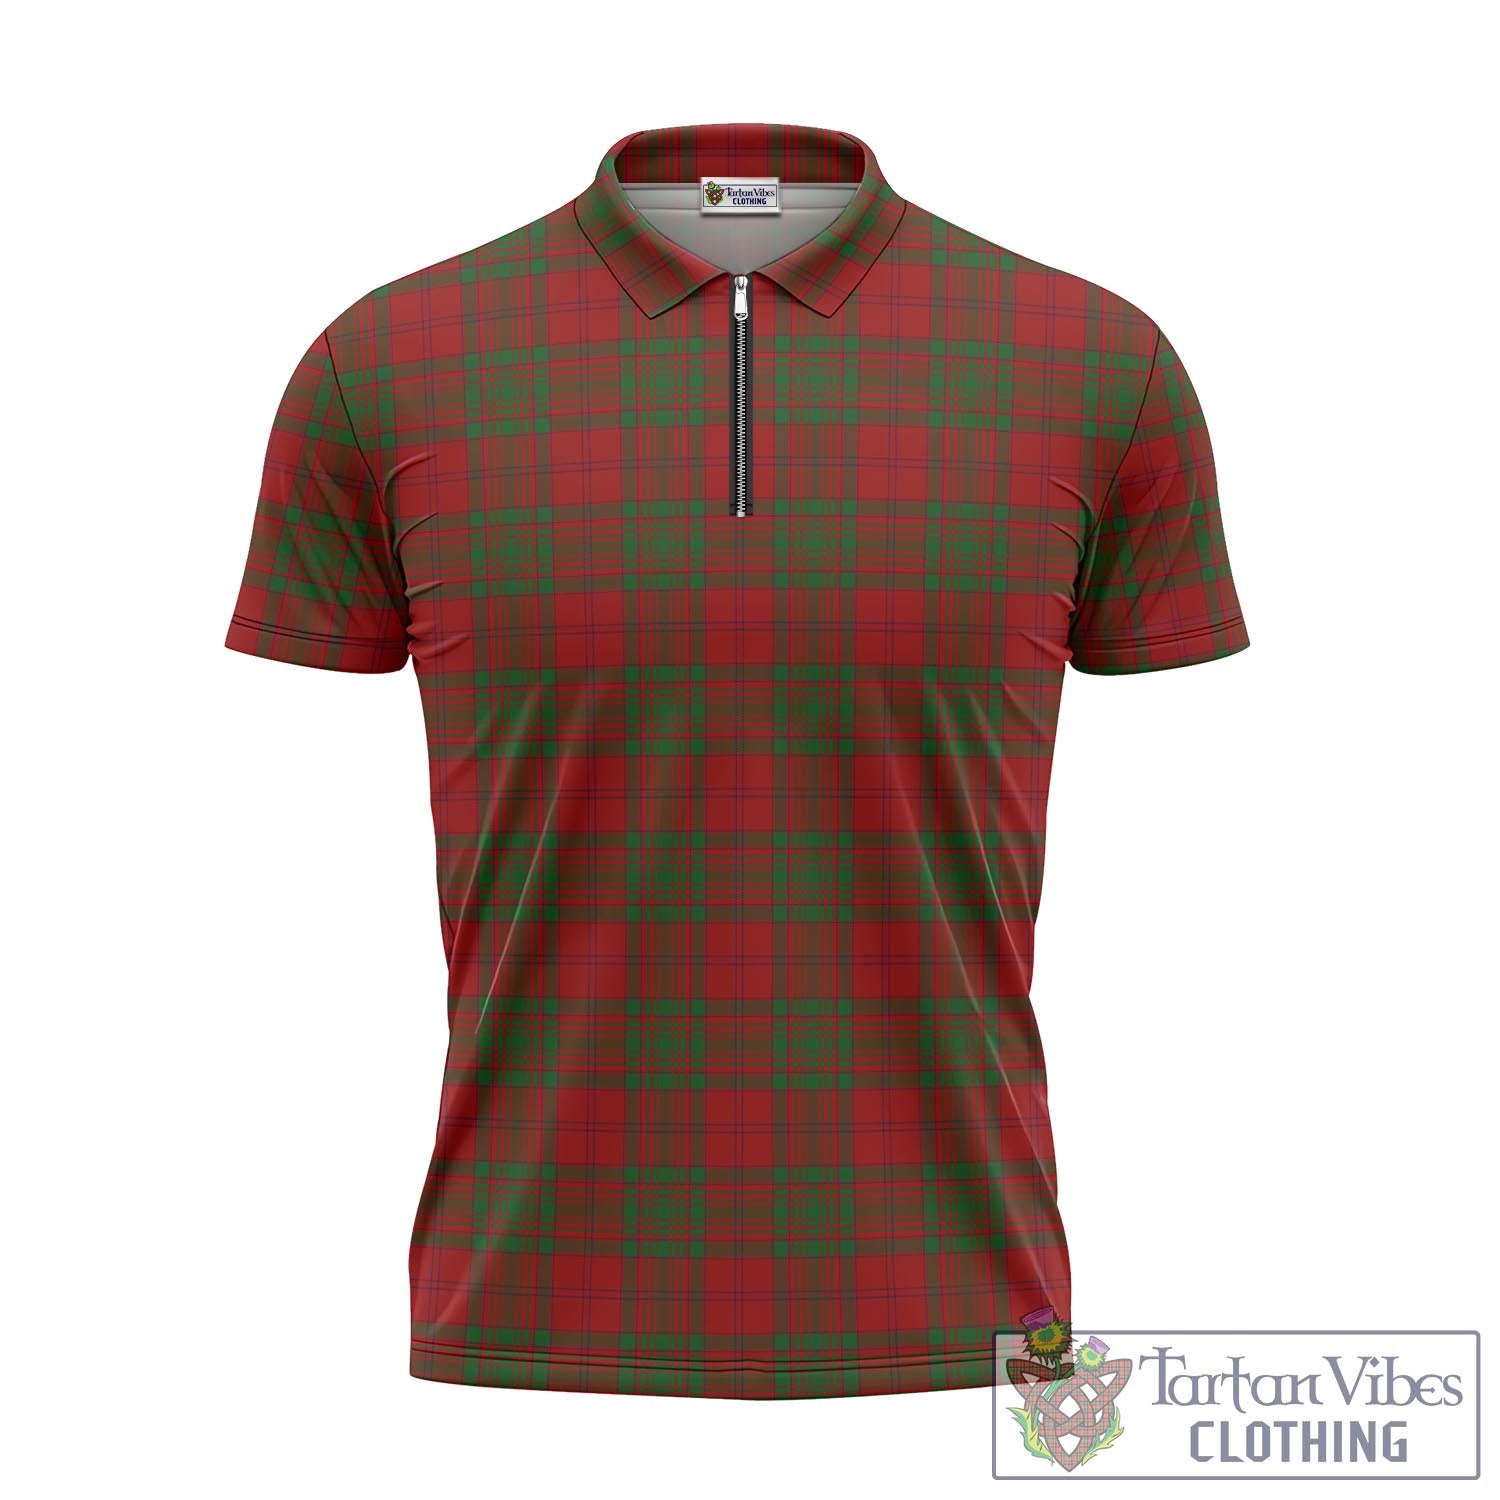 Tartan Vibes Clothing MacAlister of Glenbarr Tartan Zipper Polo Shirt